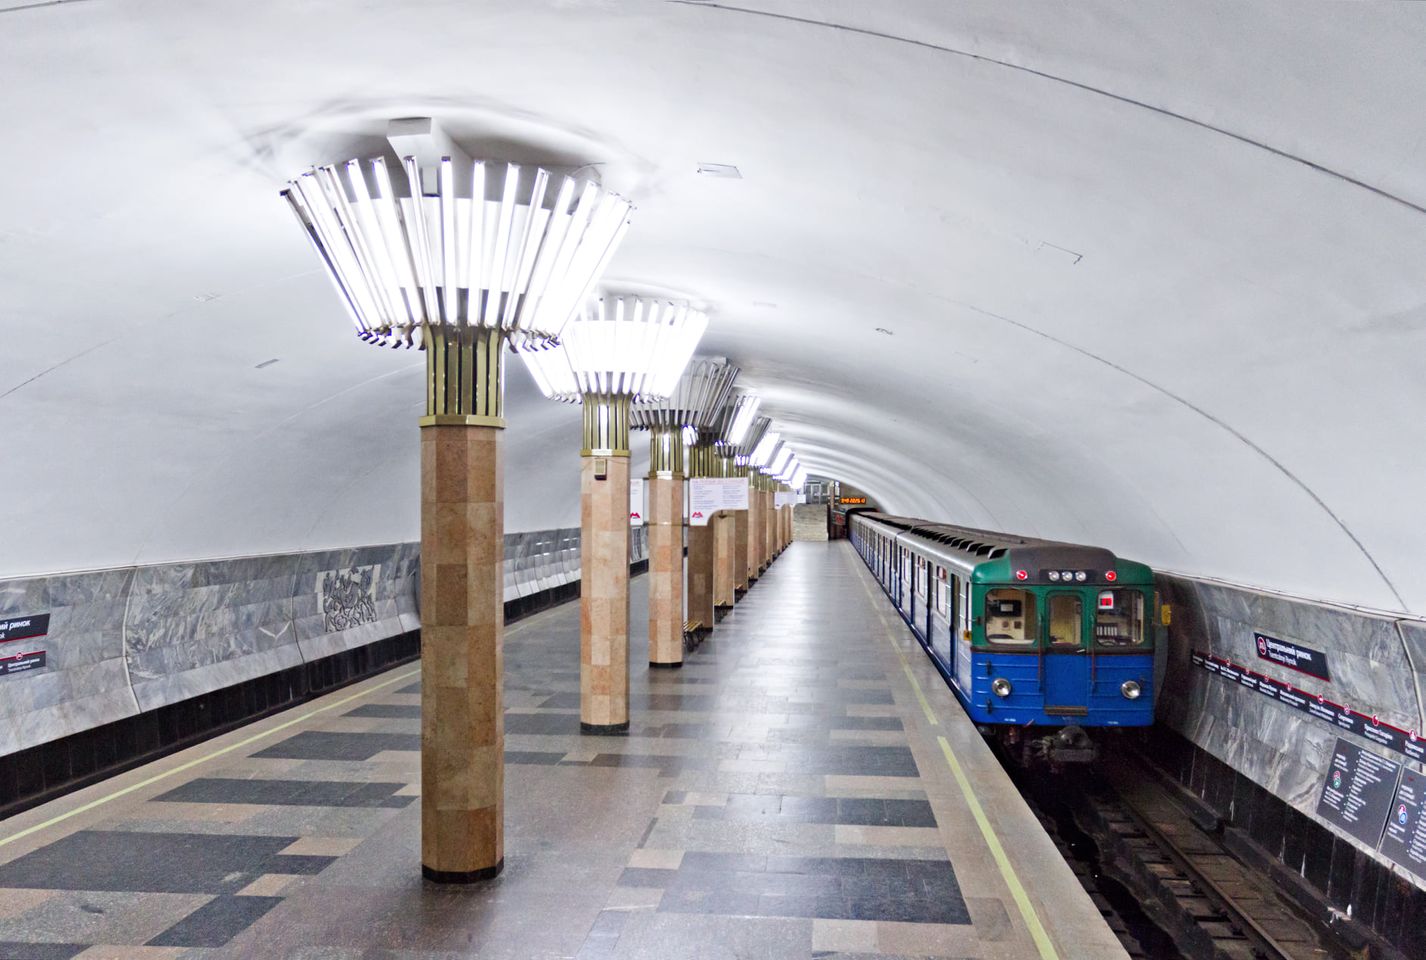 харьковское метро